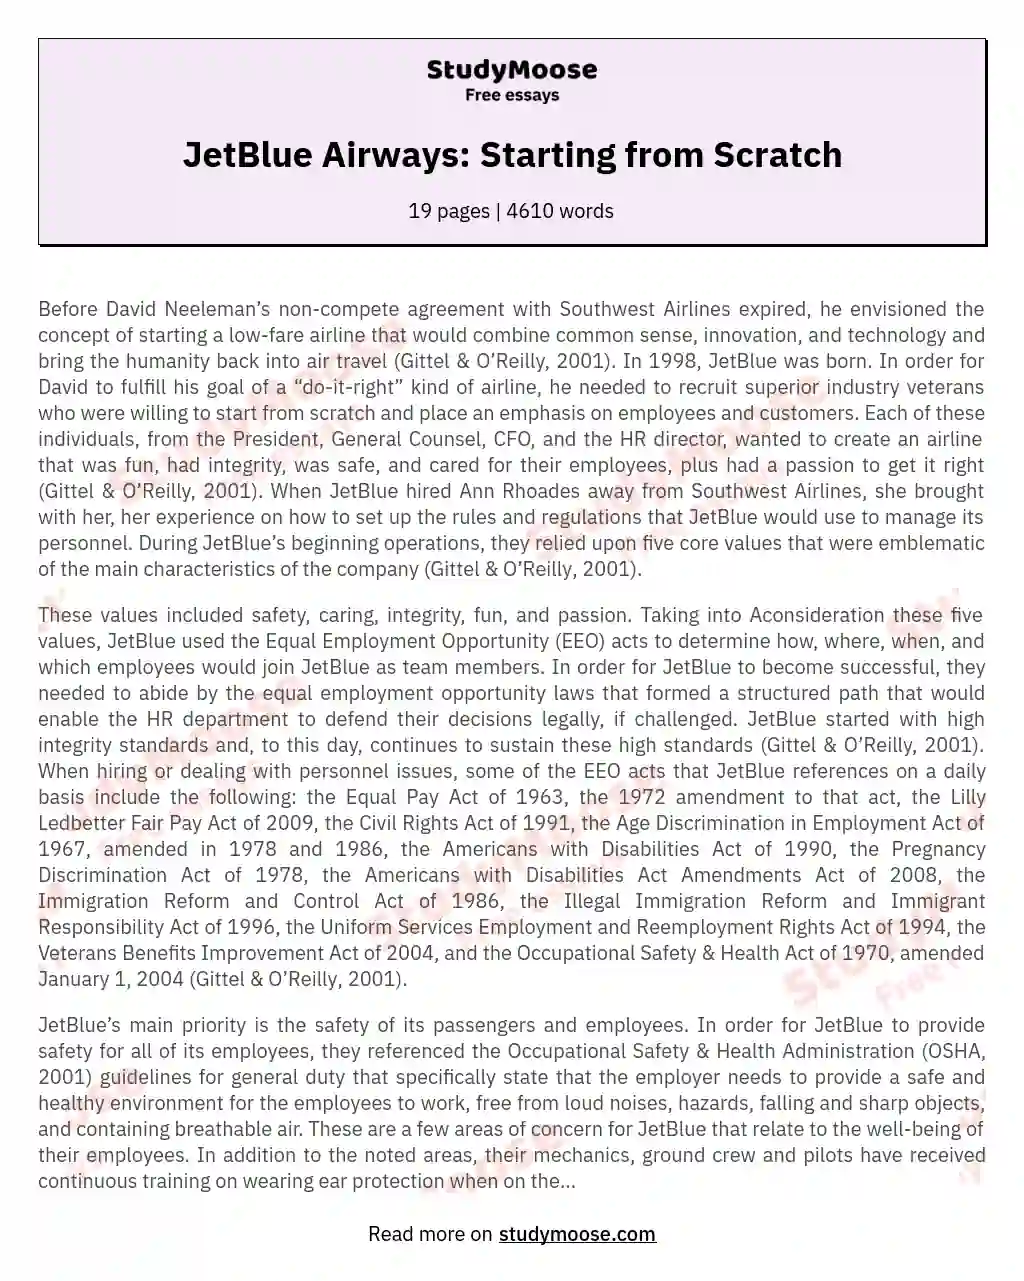 JetBlue Airways: Starting from Scratch essay